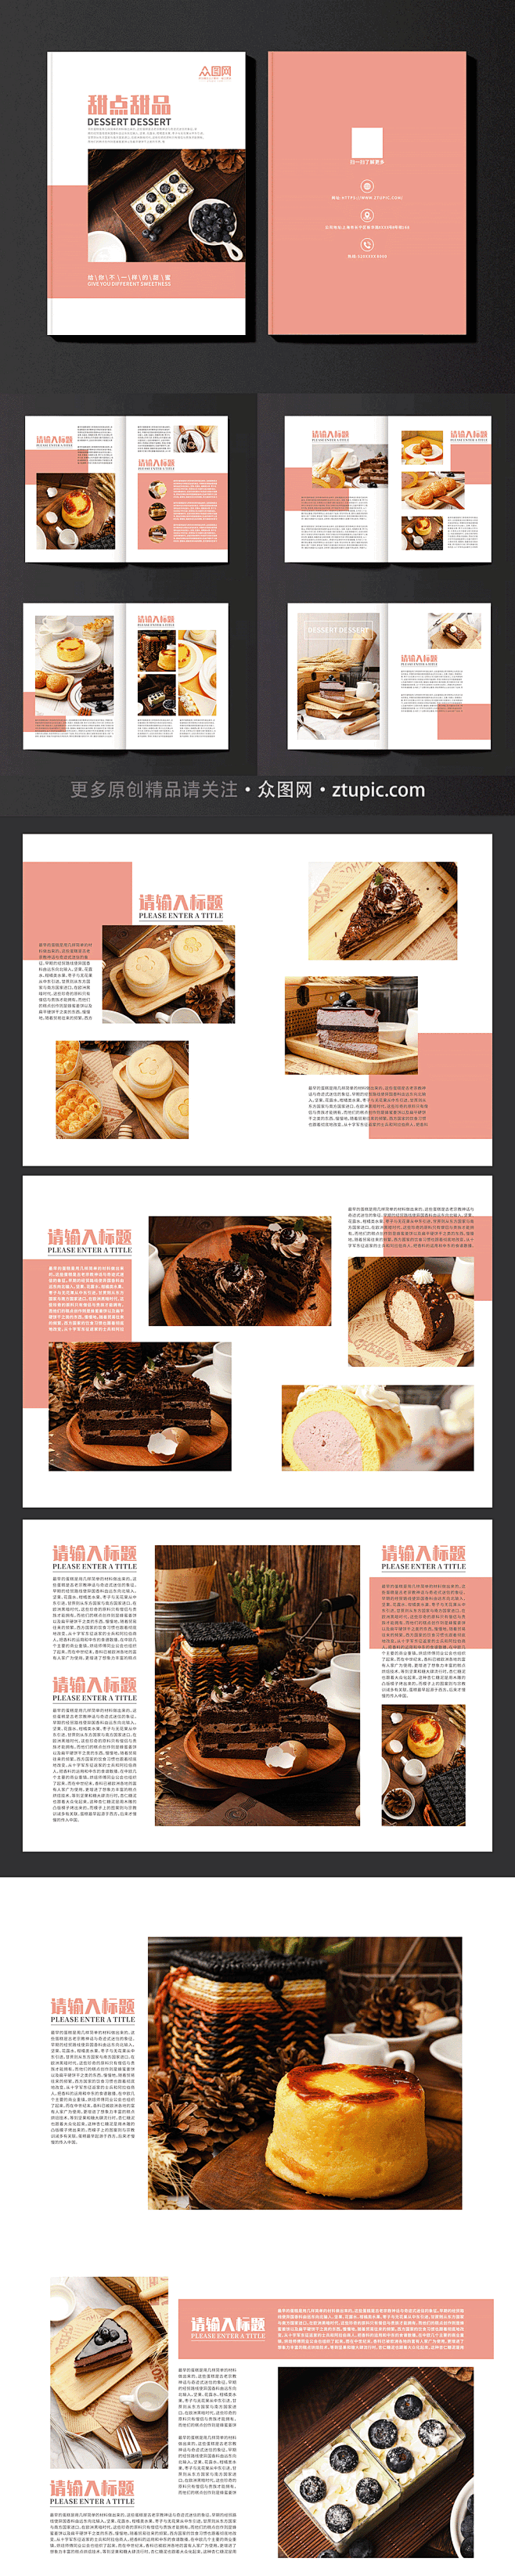 烘培甜点甜品蛋糕下午茶美食宣传册画册-众...